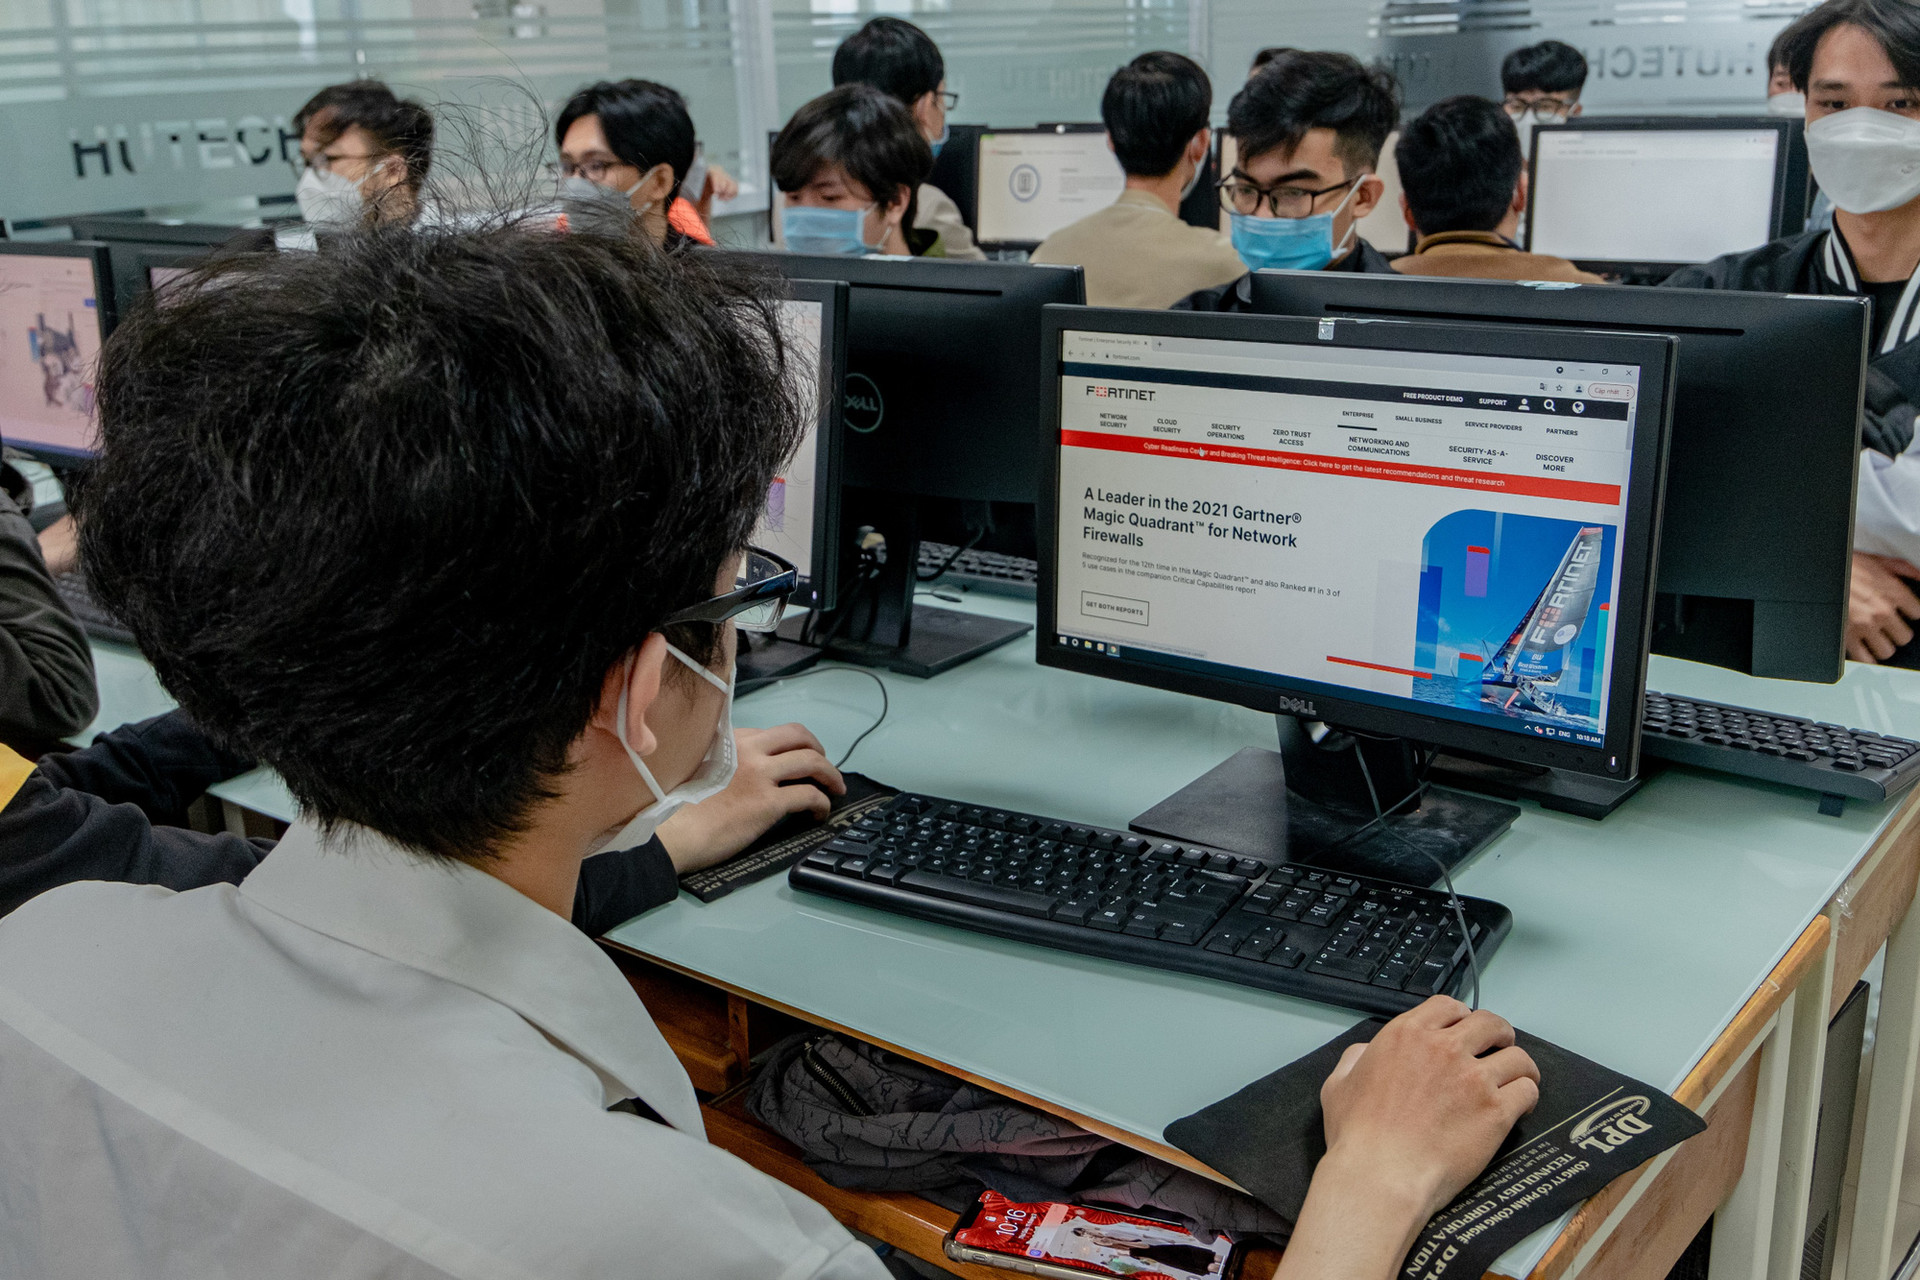 ĐH Công nghệ TP. Hồ Chí Minh thực hiện đào tạo an ninh mạng theo uỷ quyền của Fortinet - Ảnh 3.